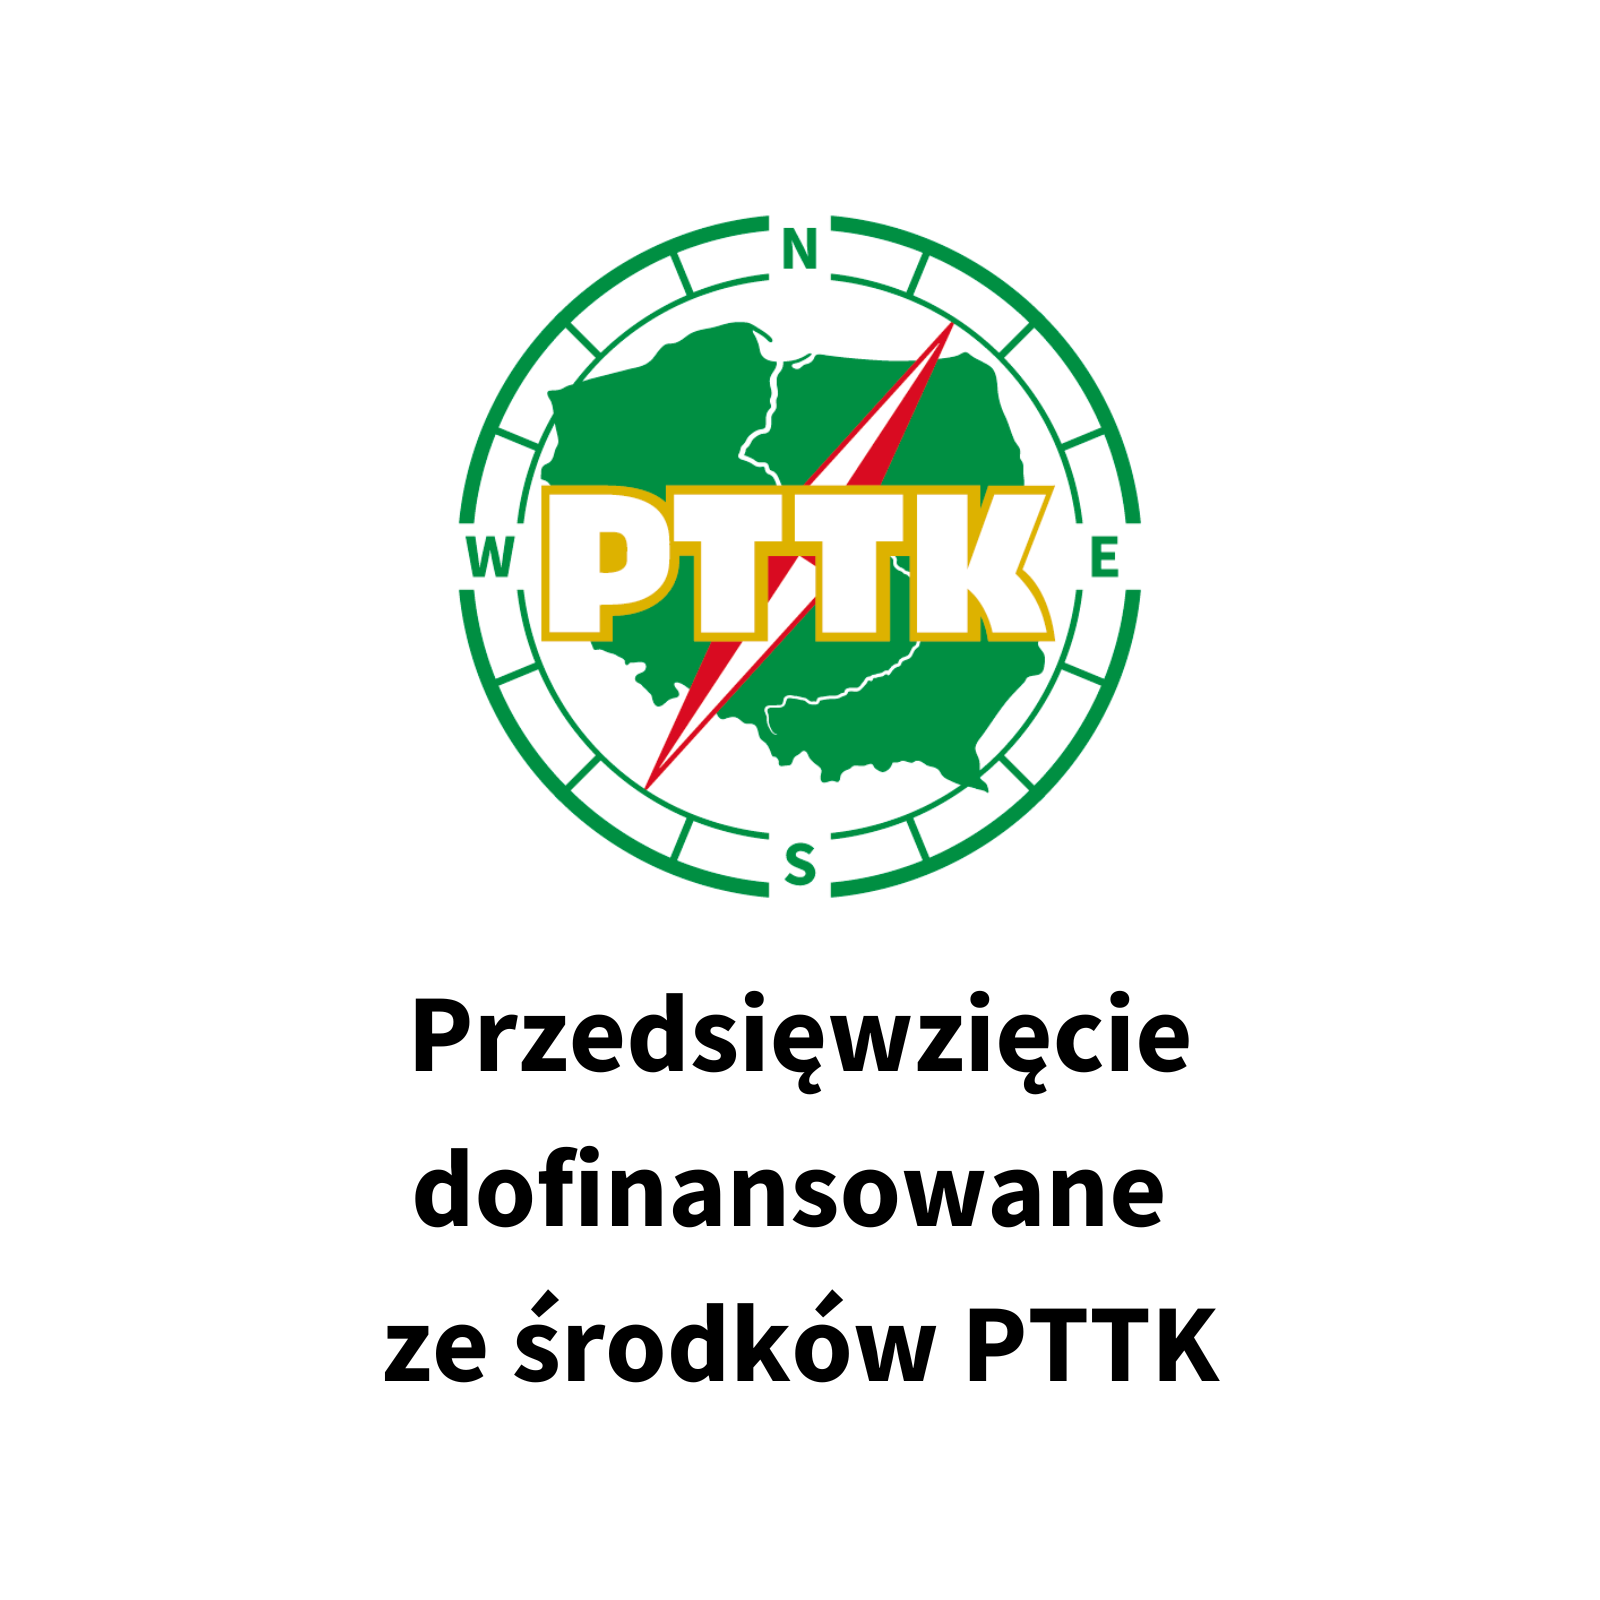 PTTK